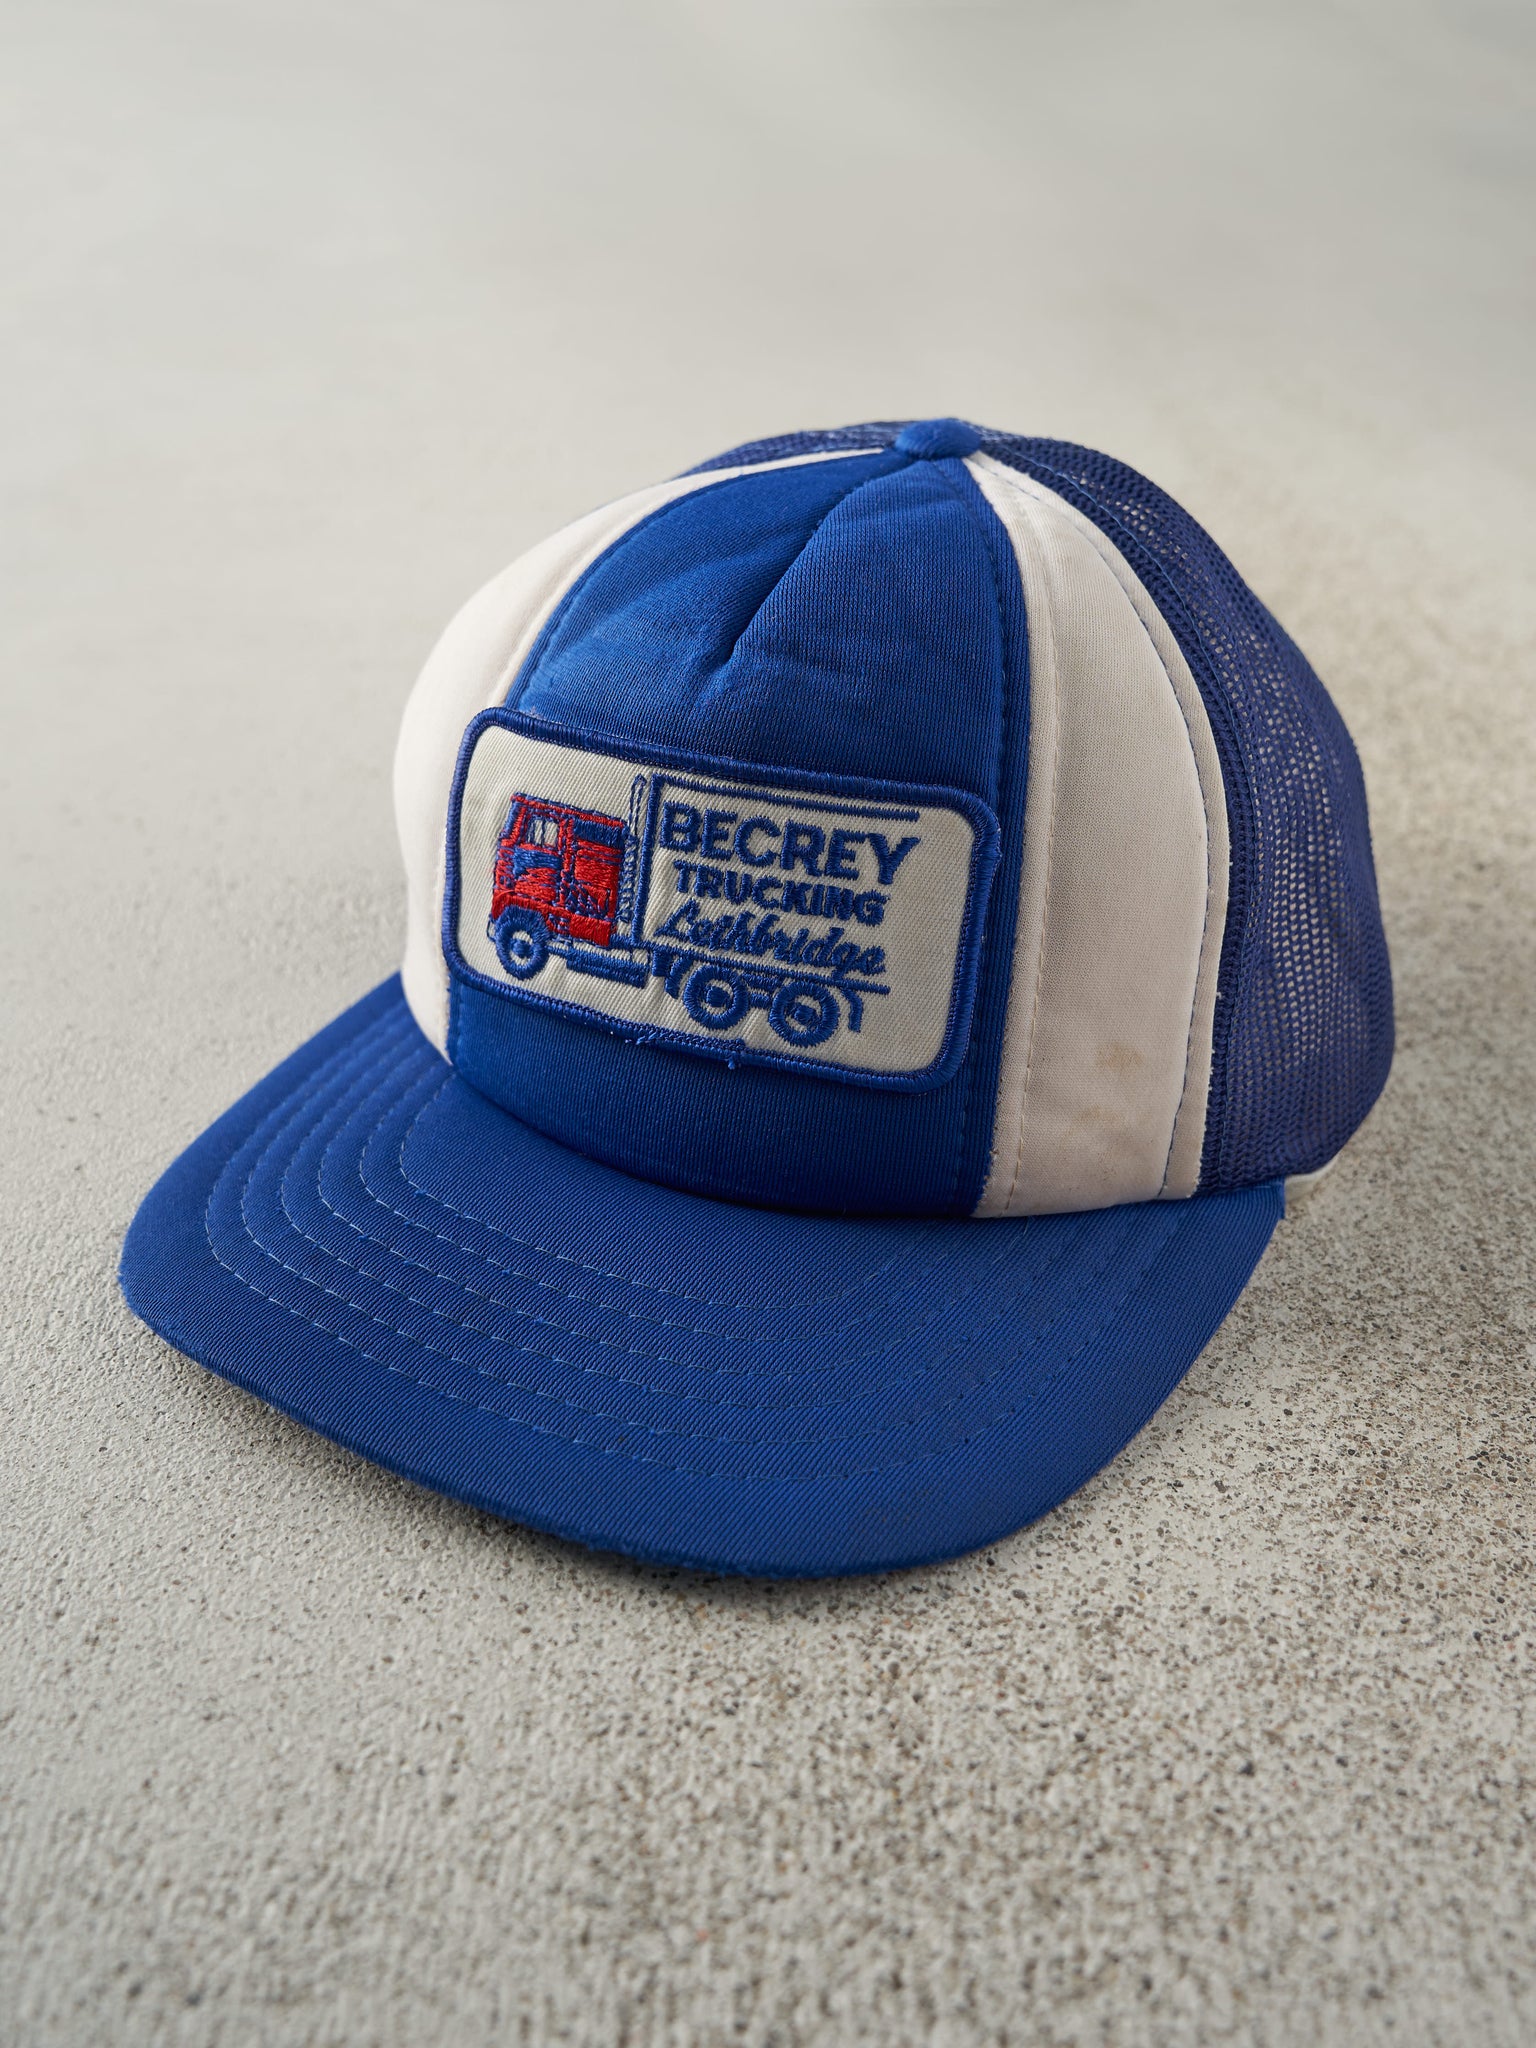 Vintage 80s Blue & White Becrey Trucking Foam Trucker Hat